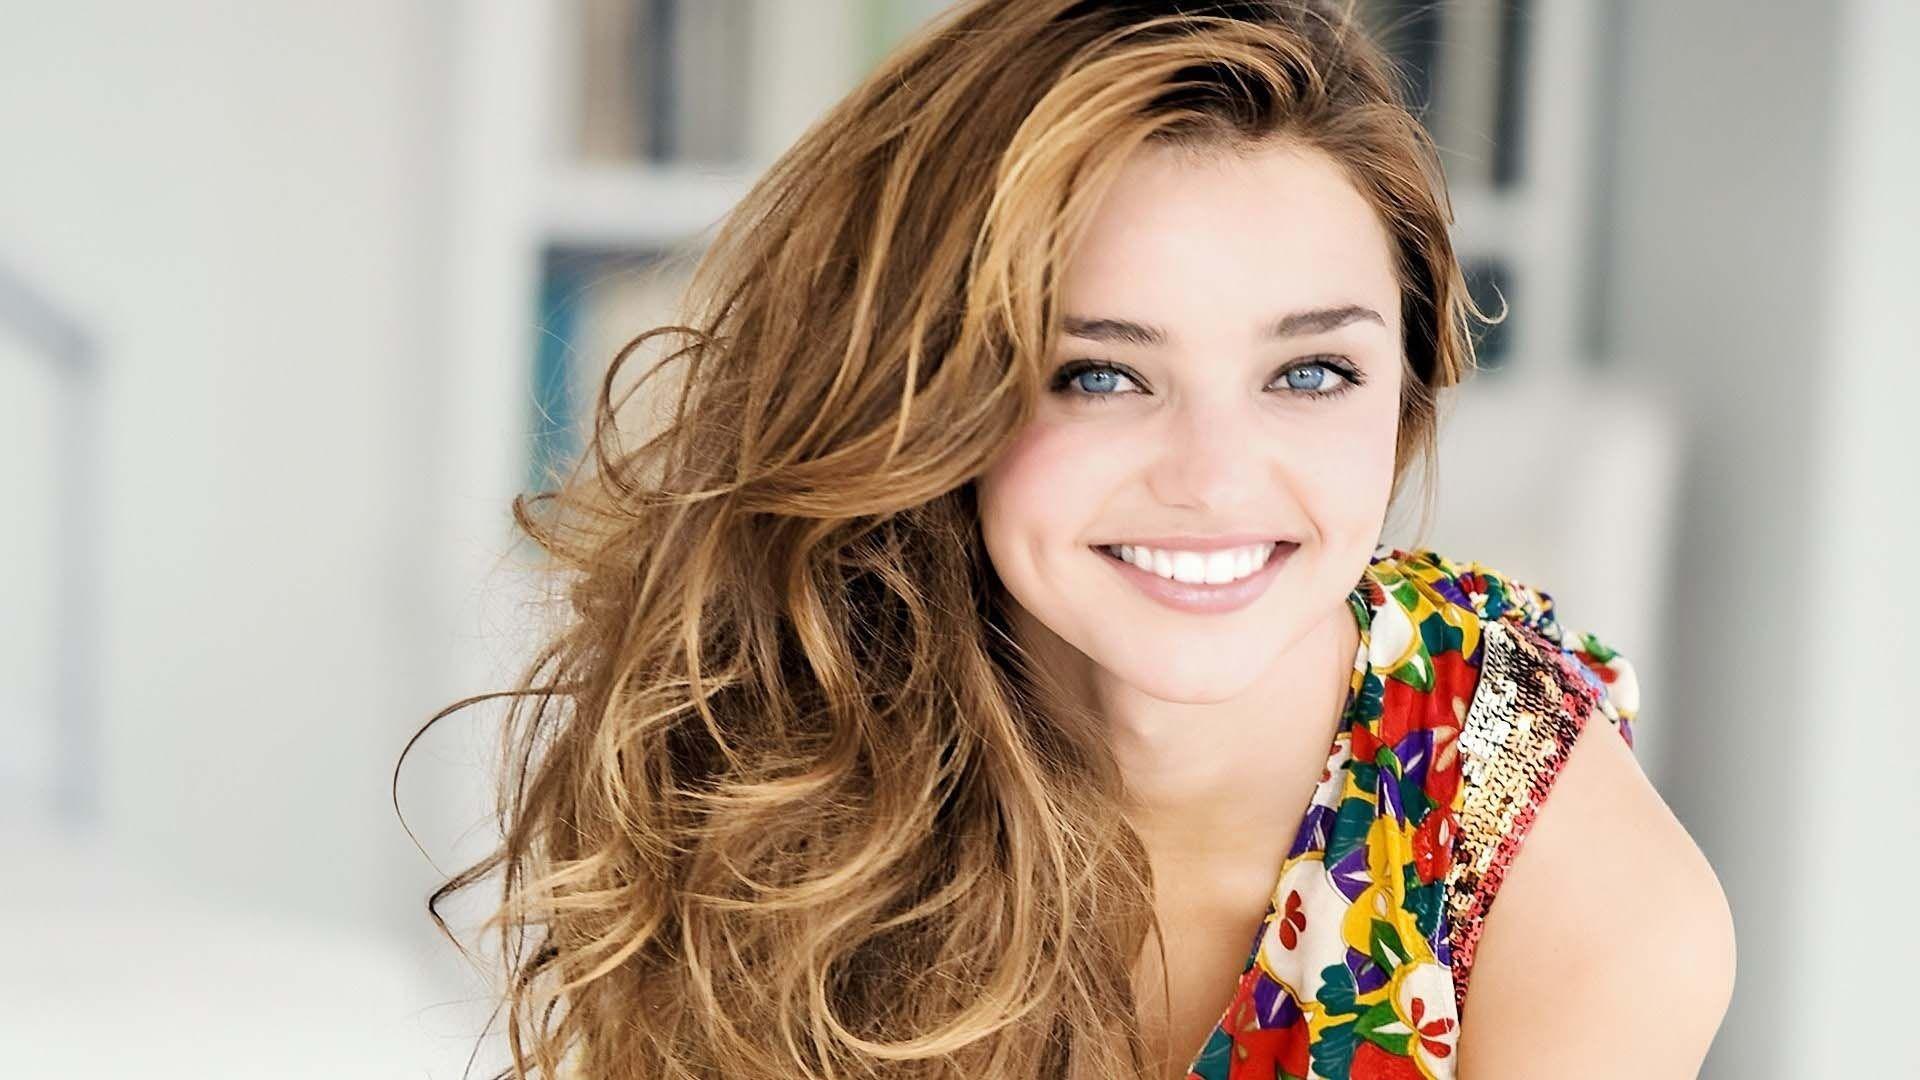 Smiling Girl Wallpapers - Top Những Hình Ảnh Đẹp